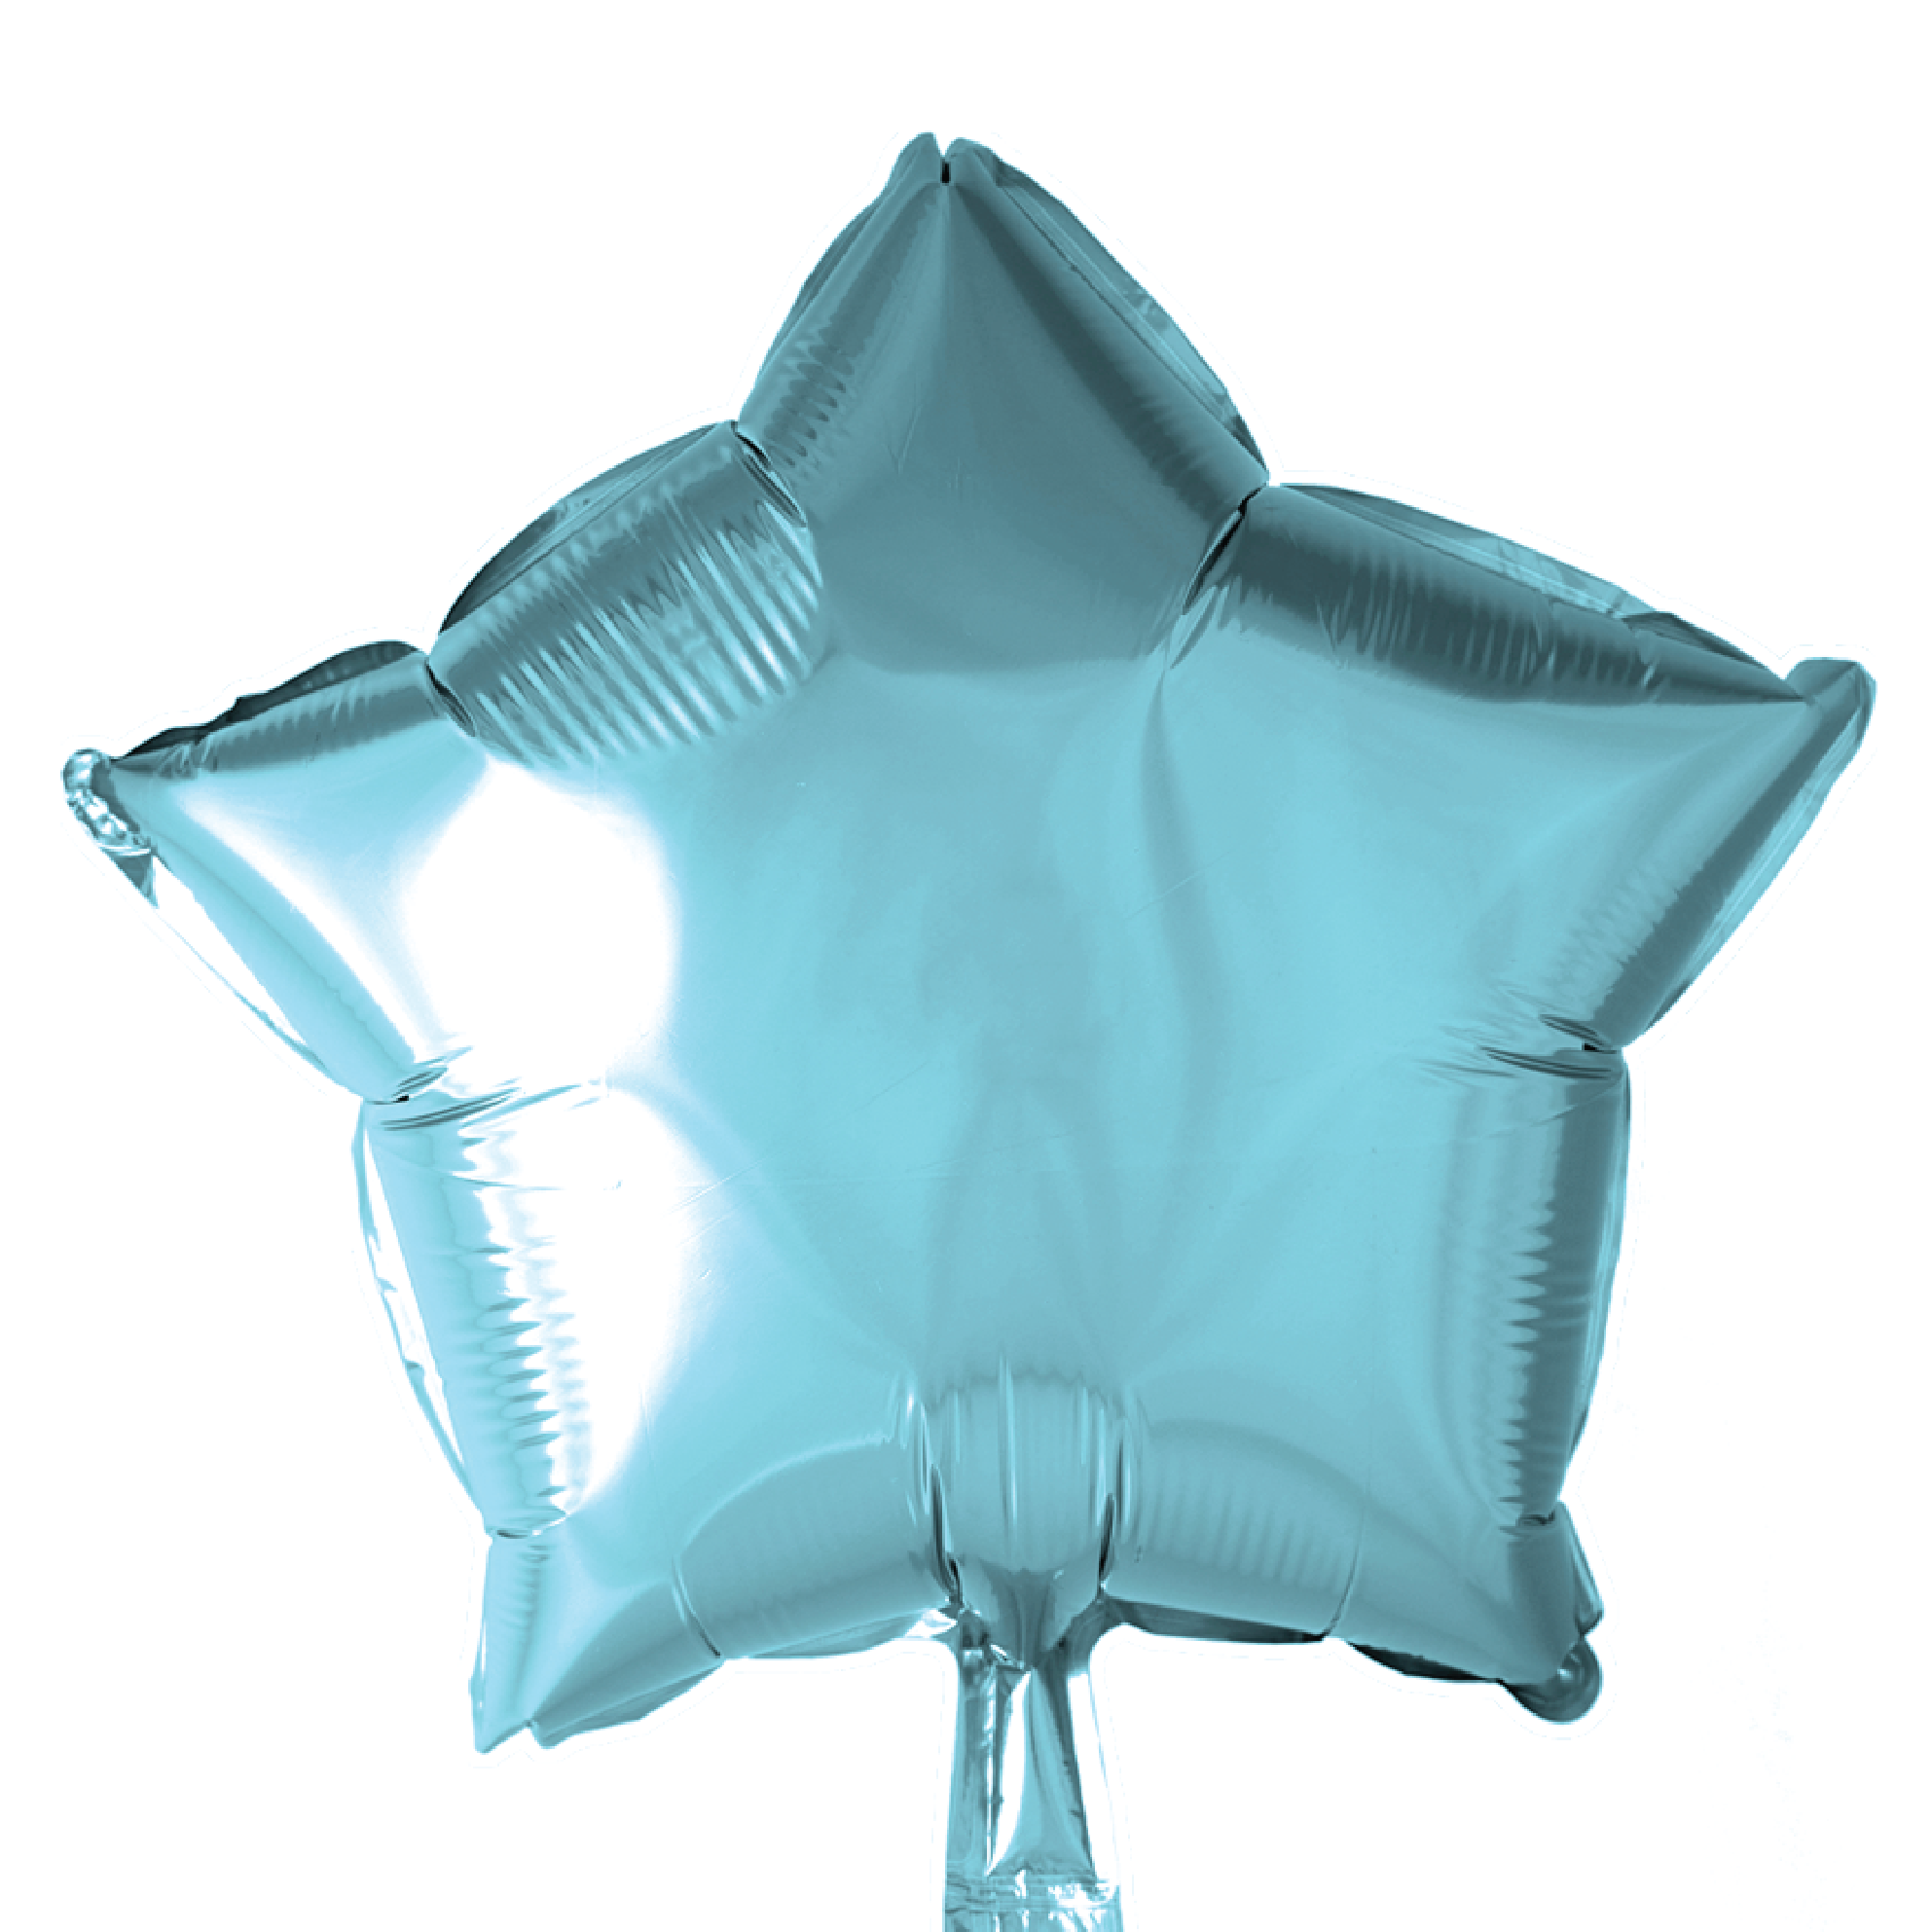 Folieballong Stjärna Light Blue 46 cm